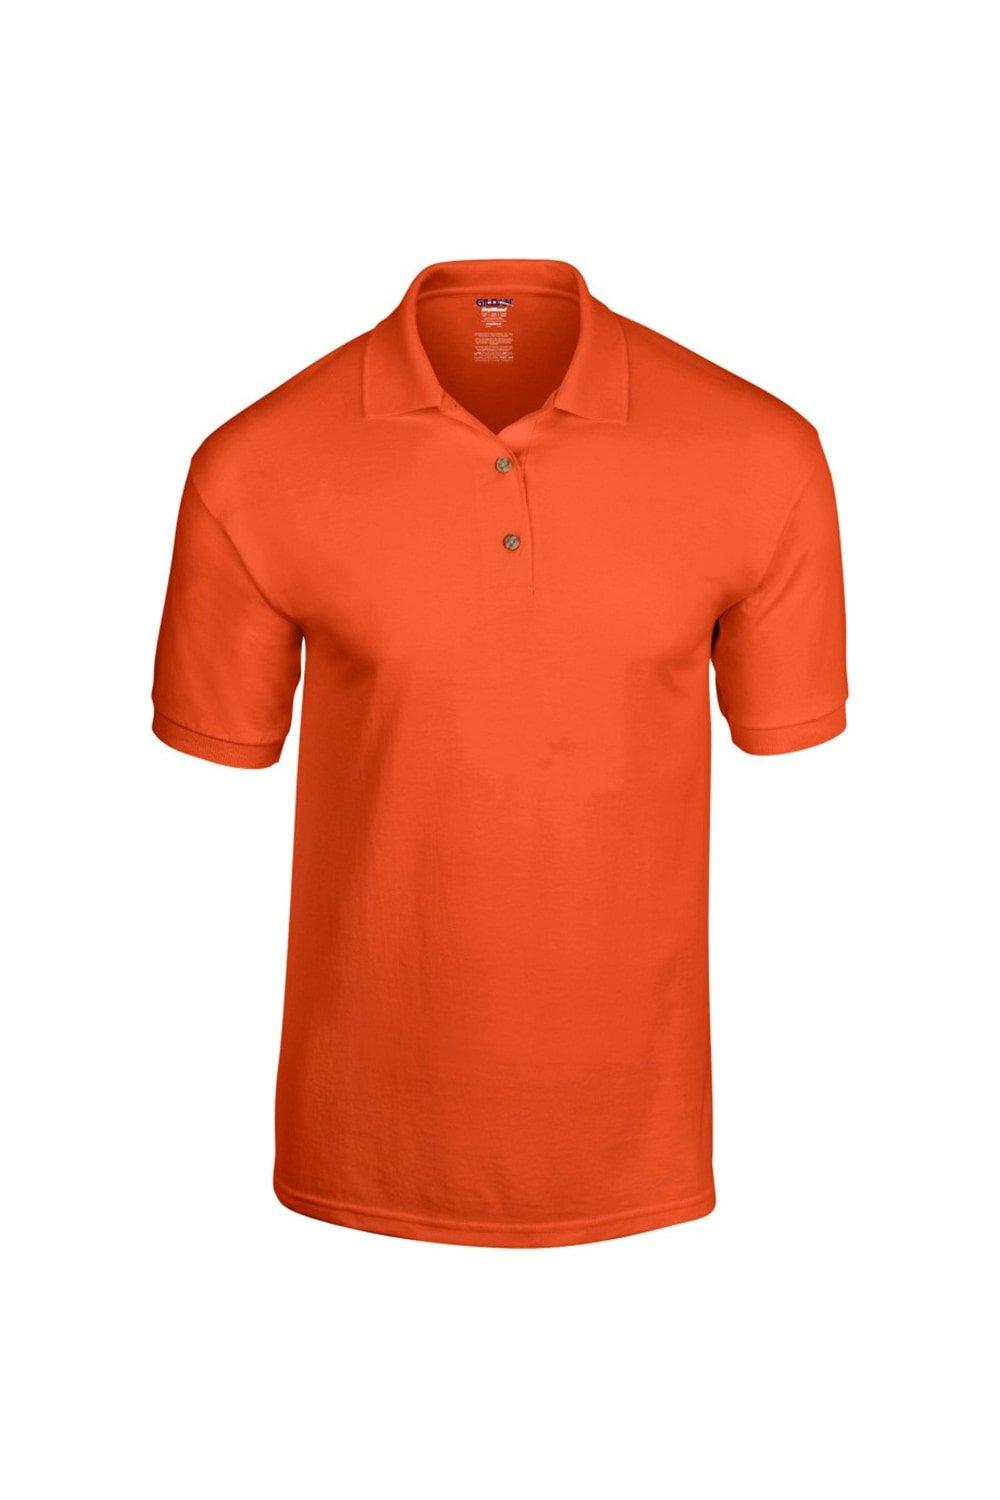 Рубашка поло из джерси DryBlend для взрослых с короткими рукавами Gildan, оранжевый